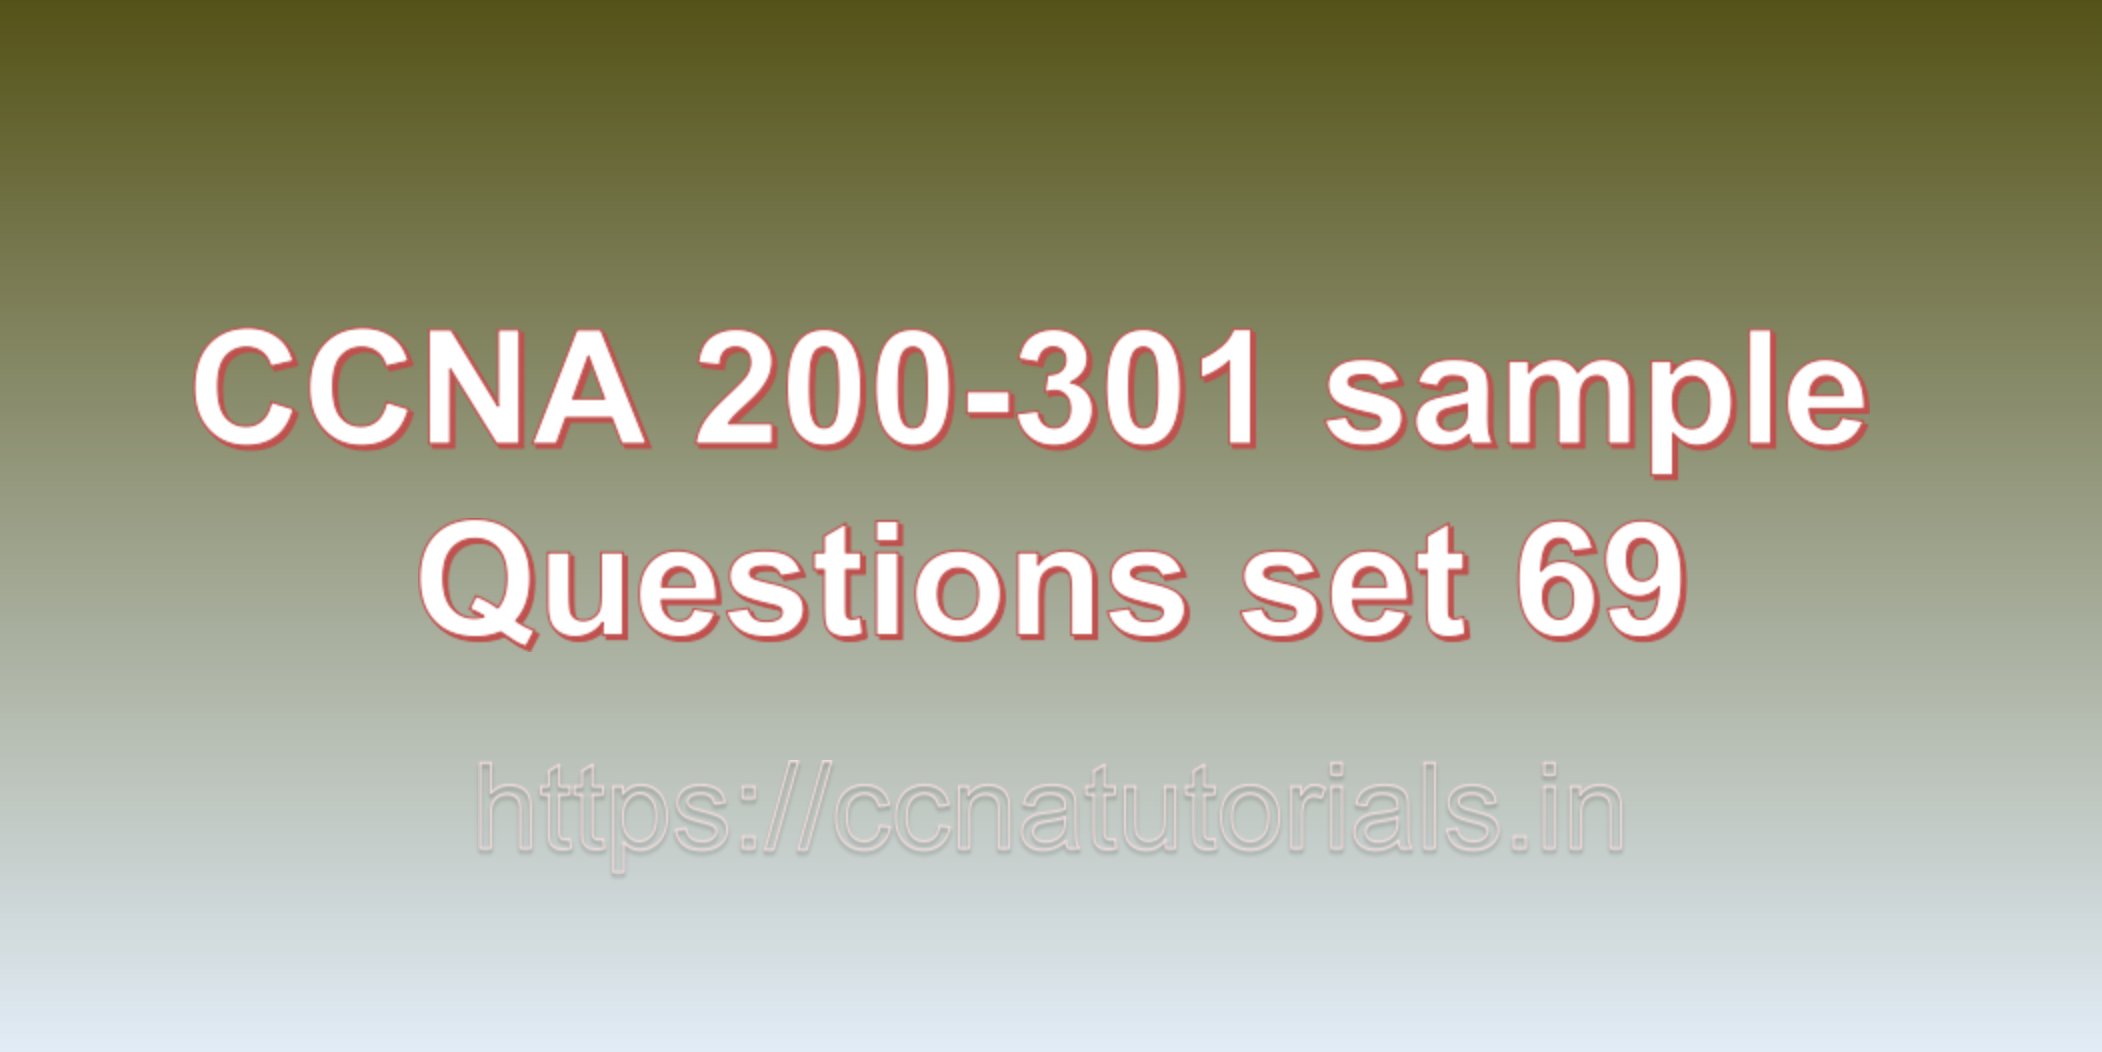 ccna sample questions set 69, ccna tutorials, CCNA Exam, ccna